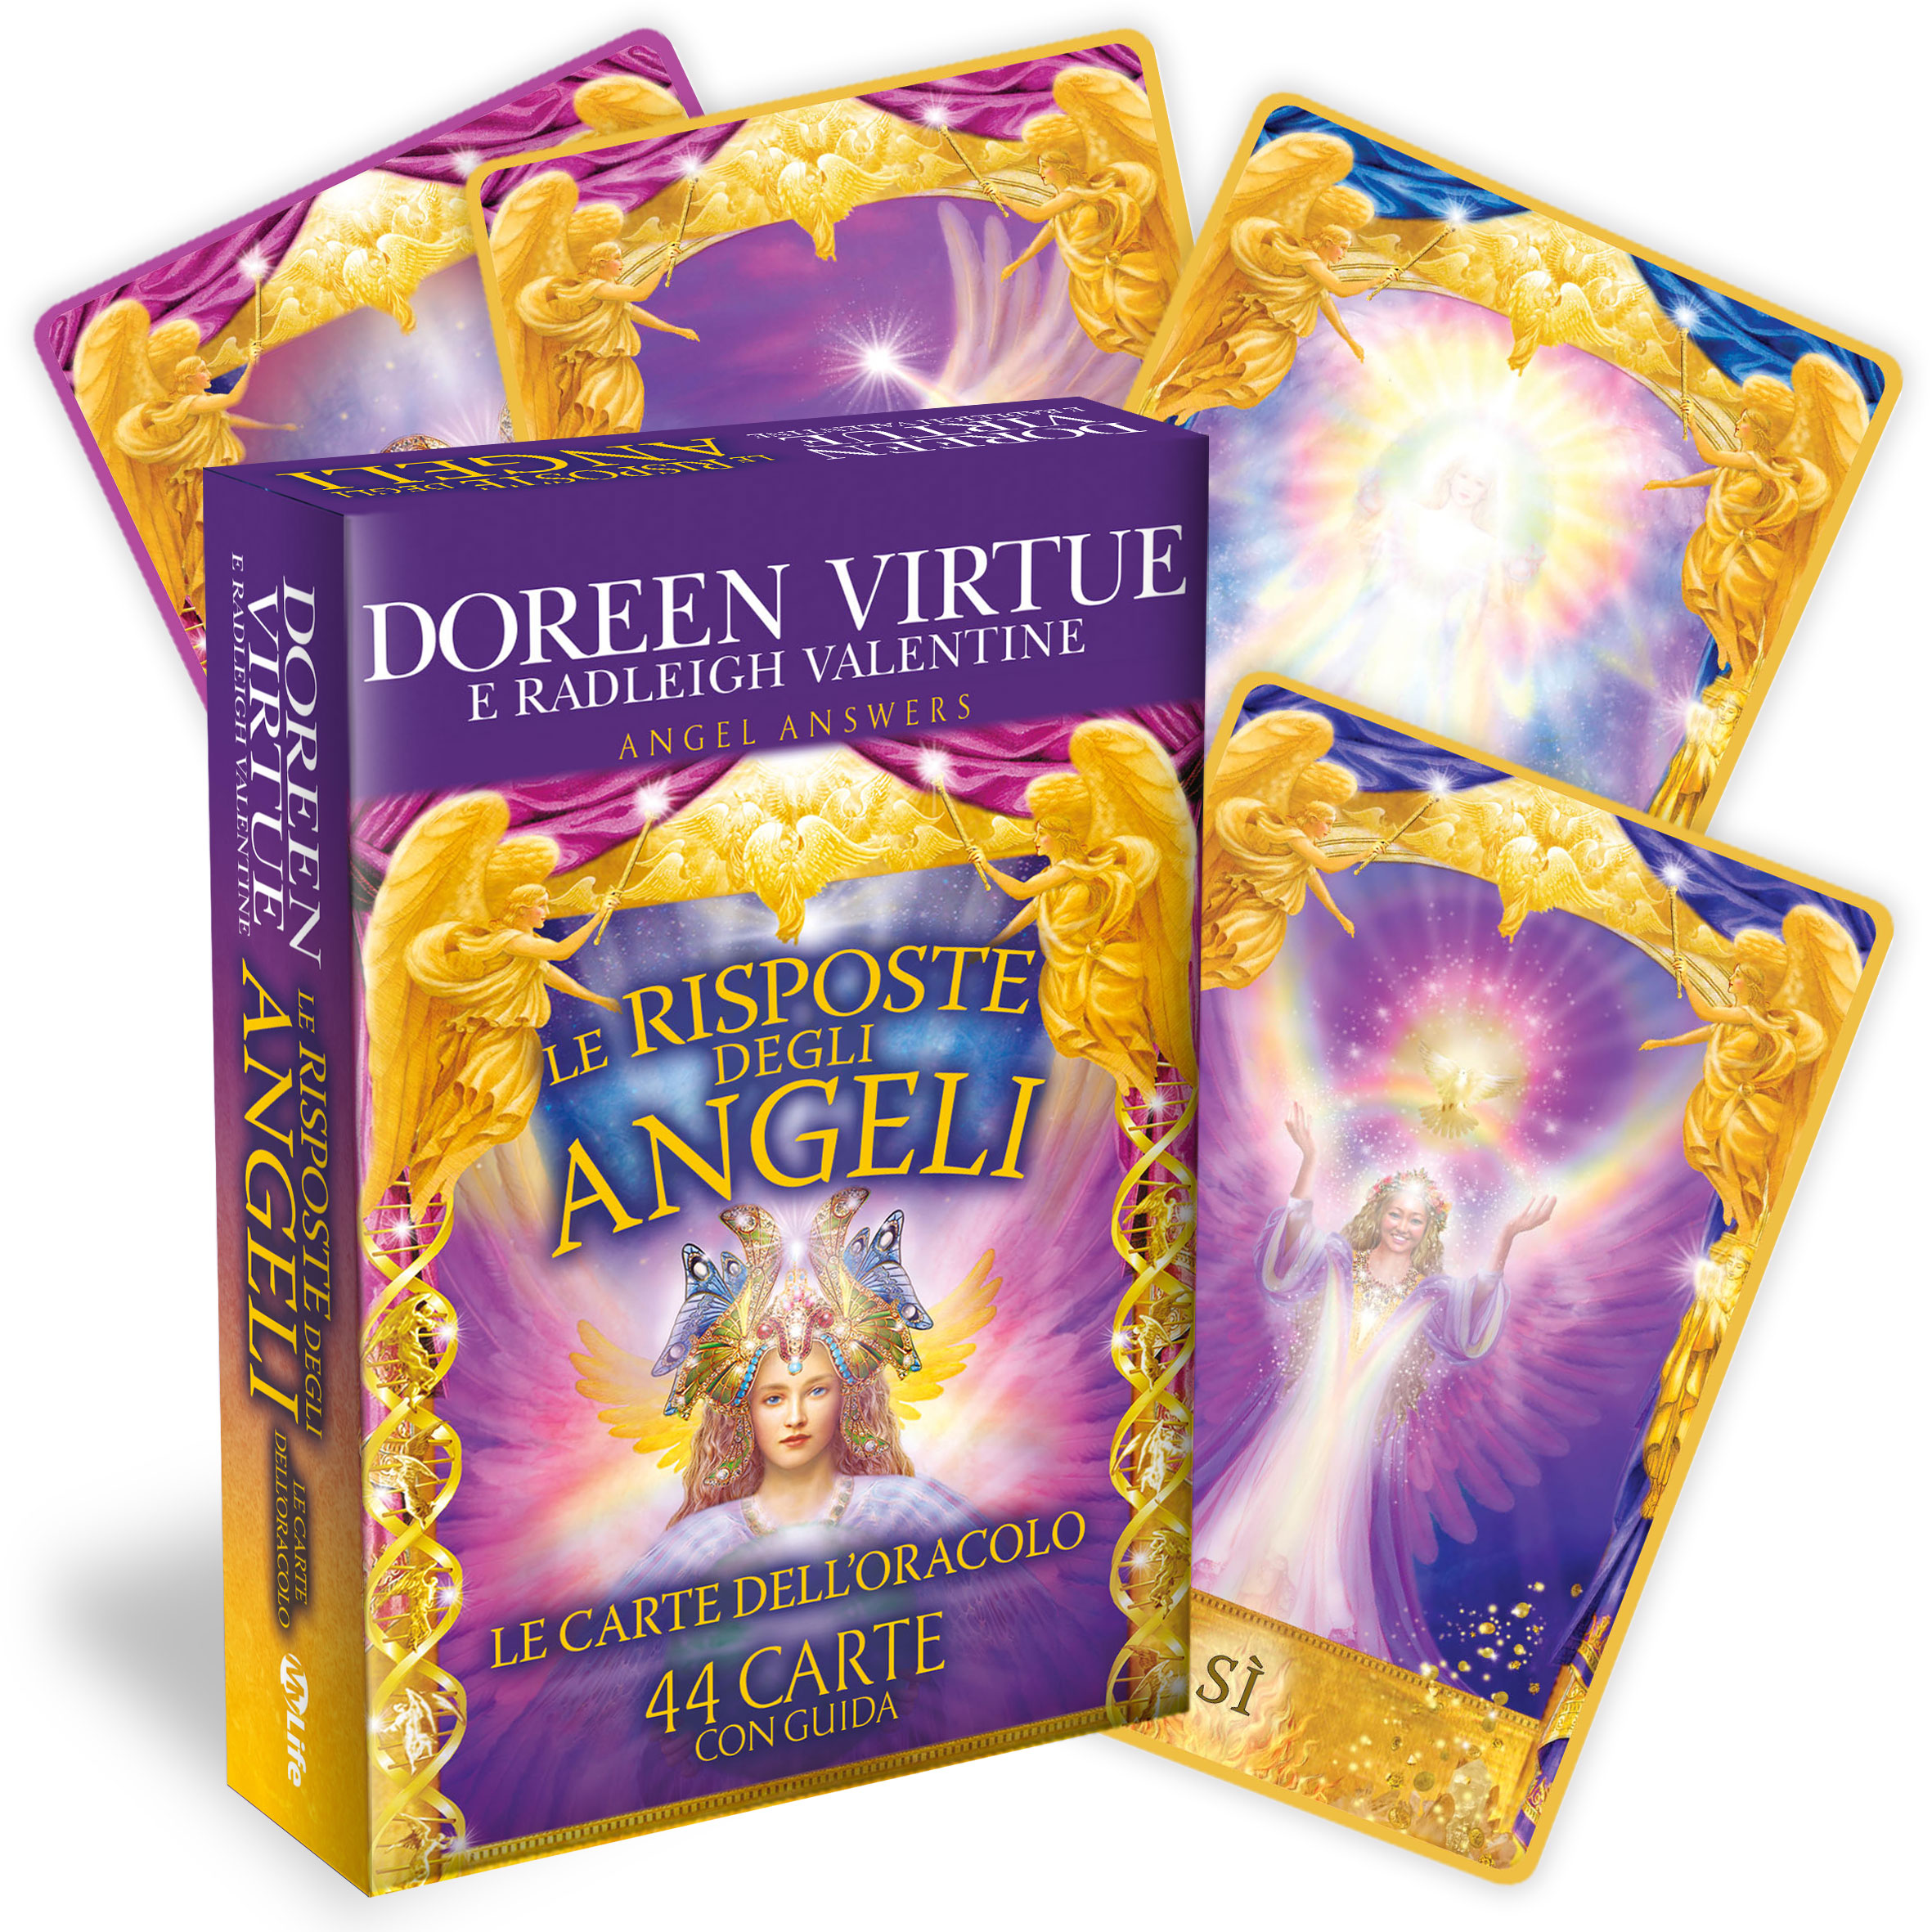 Le risposte degli Angeli - Le carte dell'oracolo - Doreen Virtue